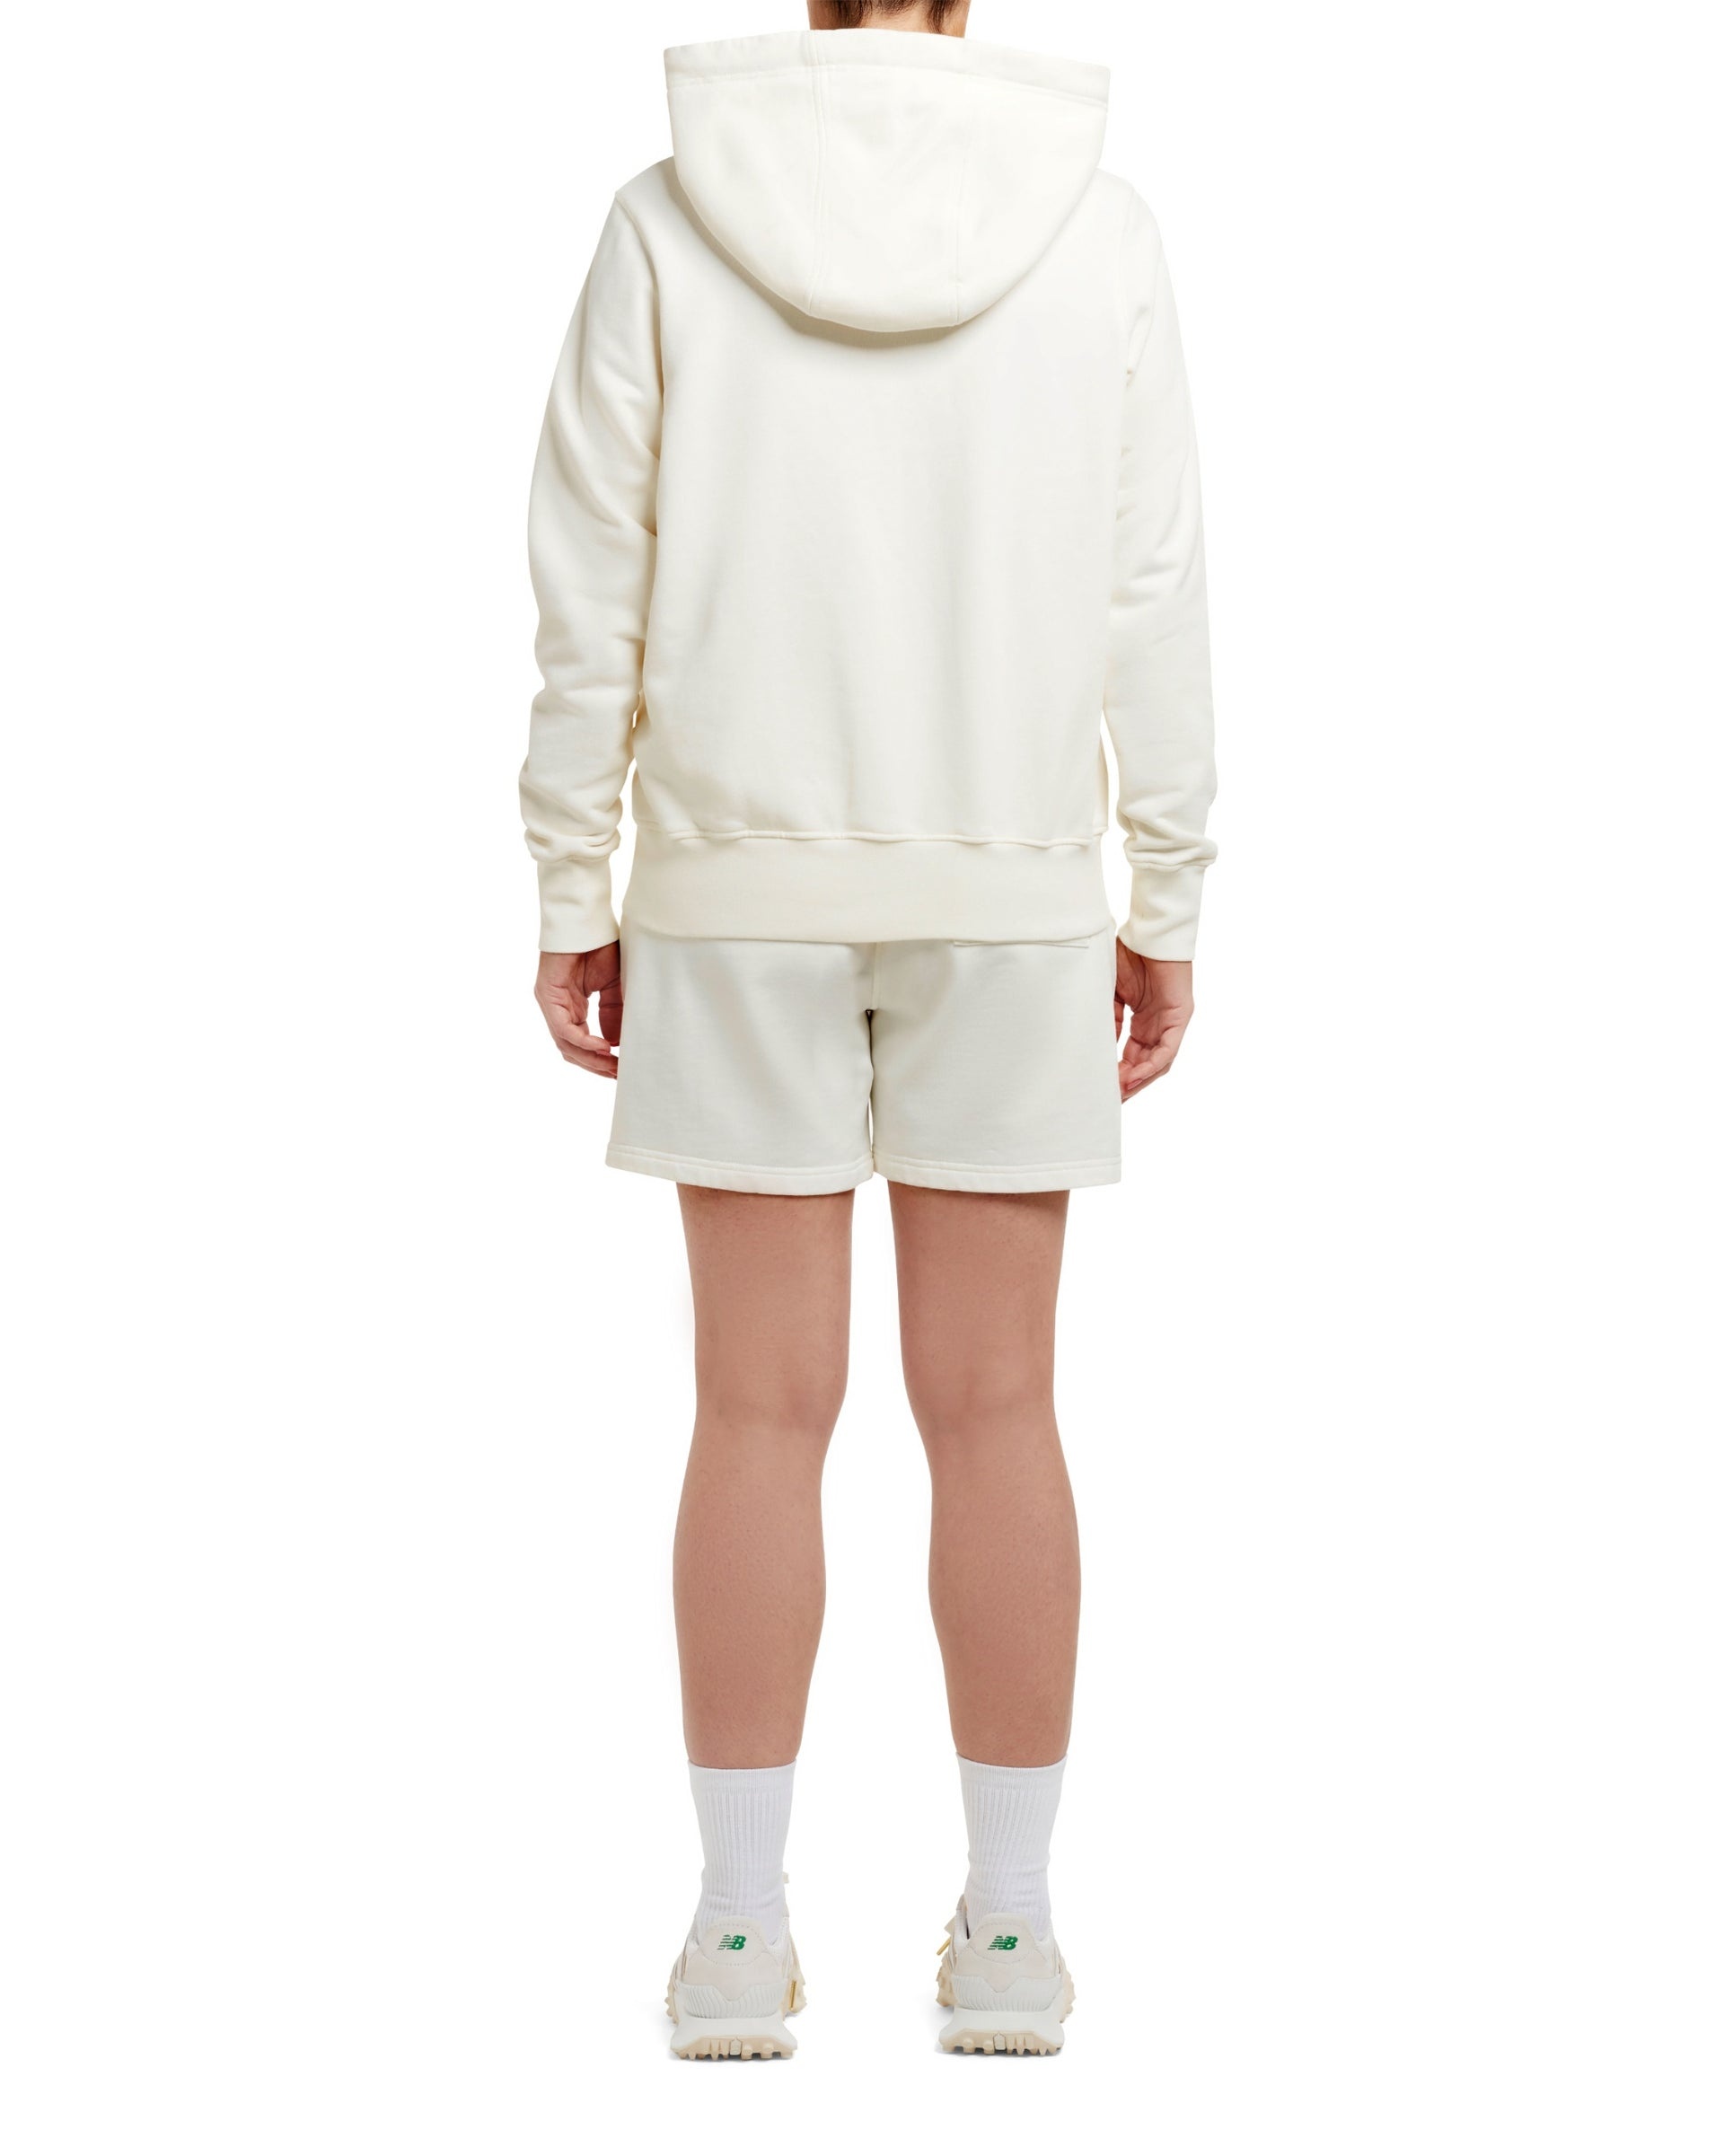 Fujita San Hooded Sweatshirt - 3